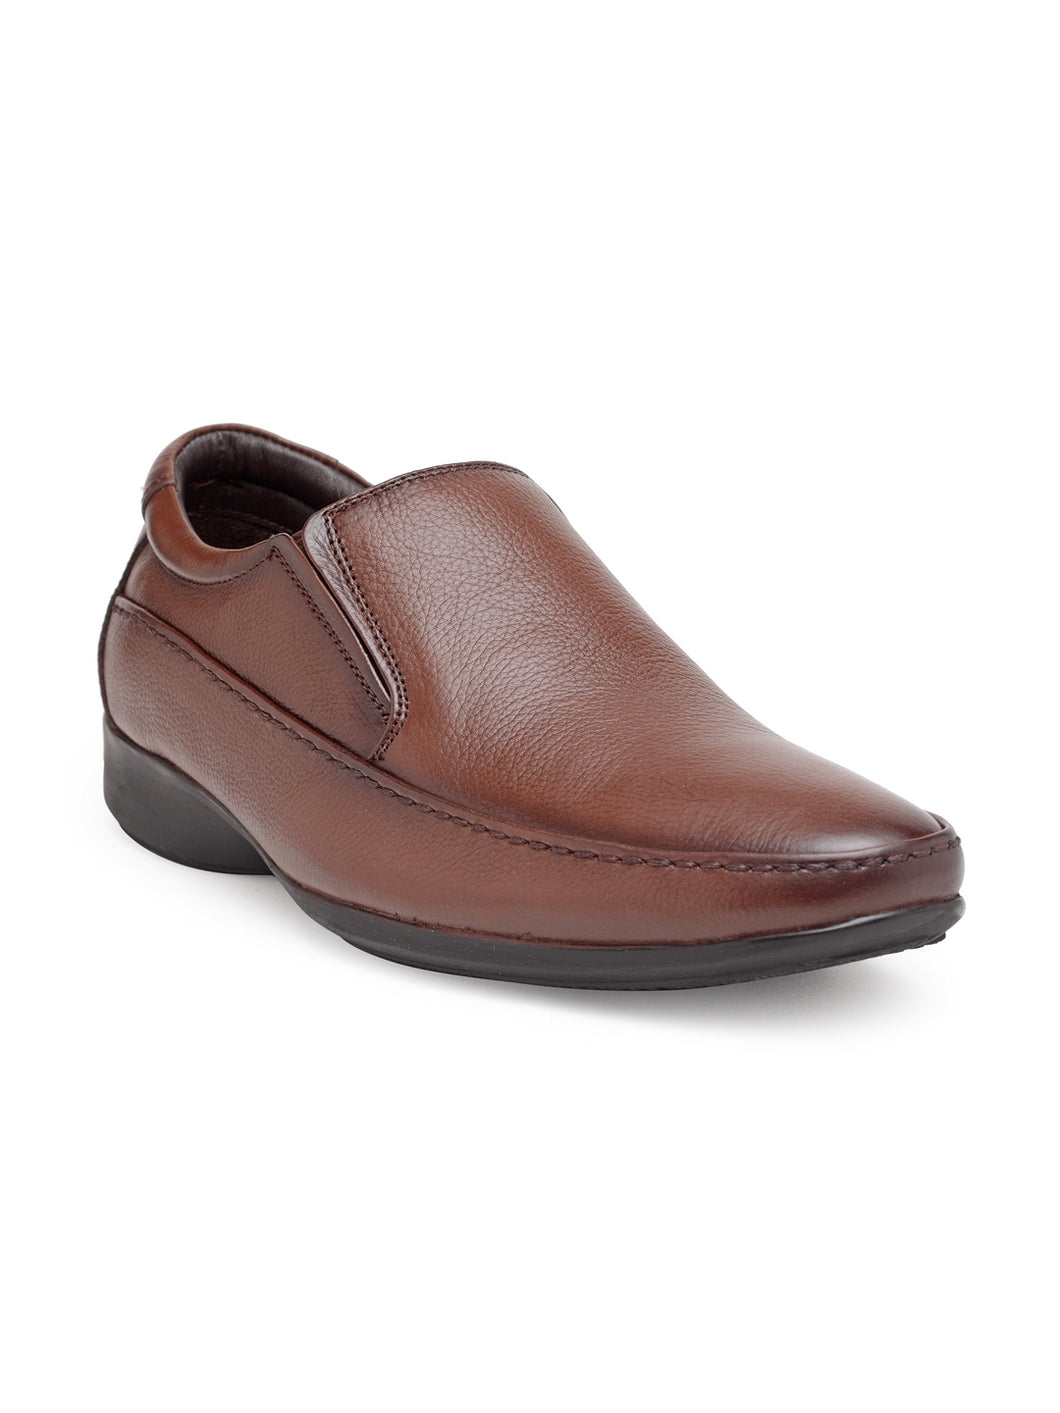 Teakwood Genuine leather Men Tan Brown Formal Slip-On Shoes